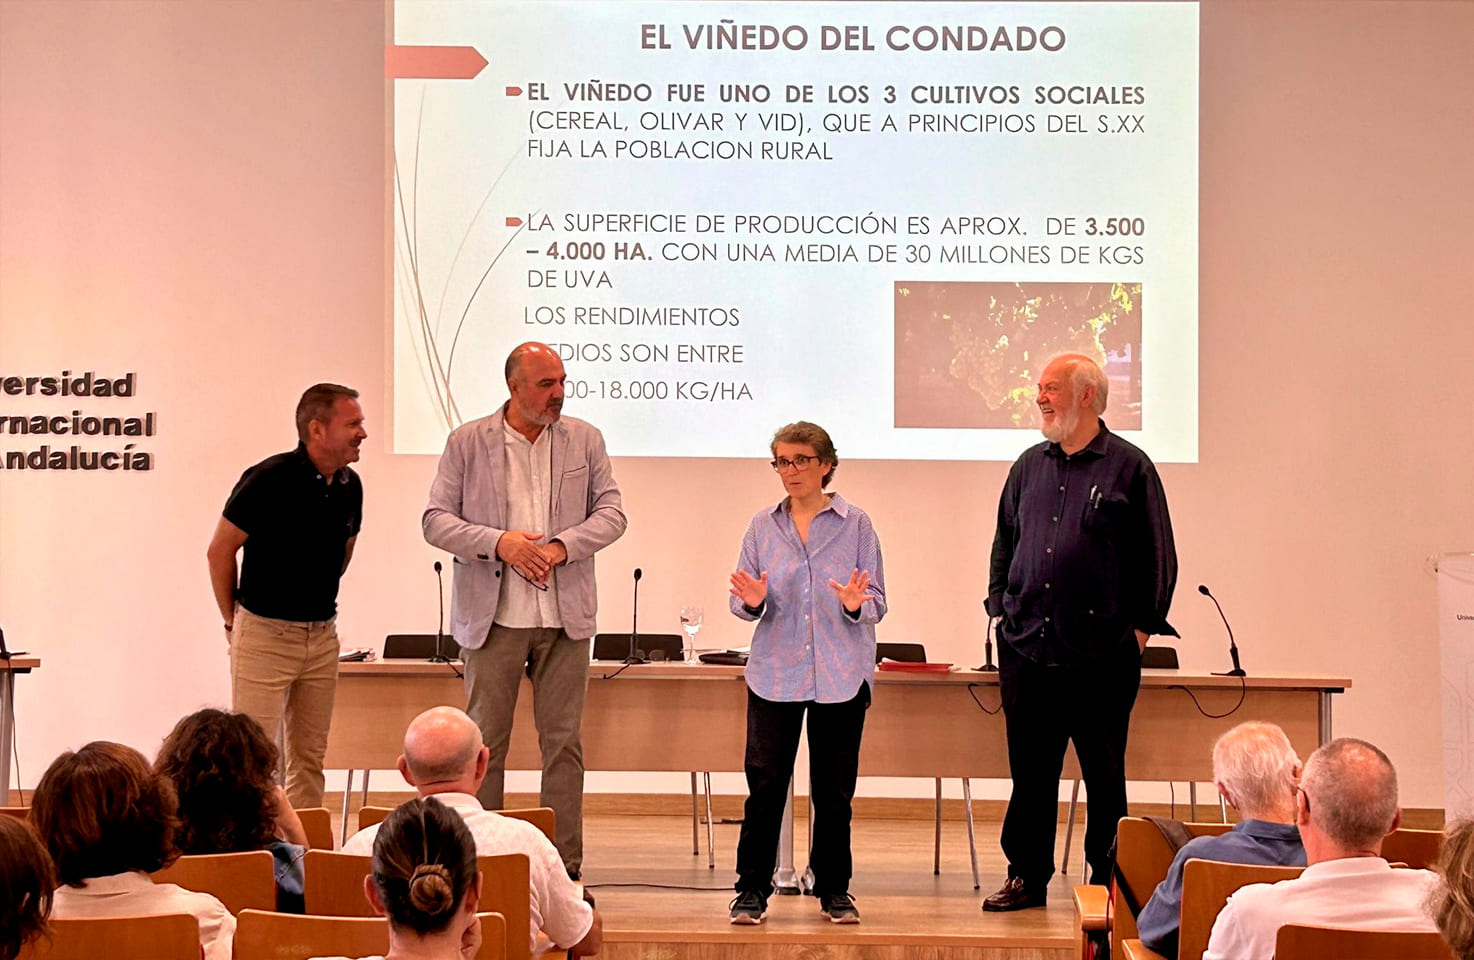 La directora de la UNIA, María de la O Barroso, da la bienvenida al curso sobre viticultura del Condado de Huelva a los asistentes.